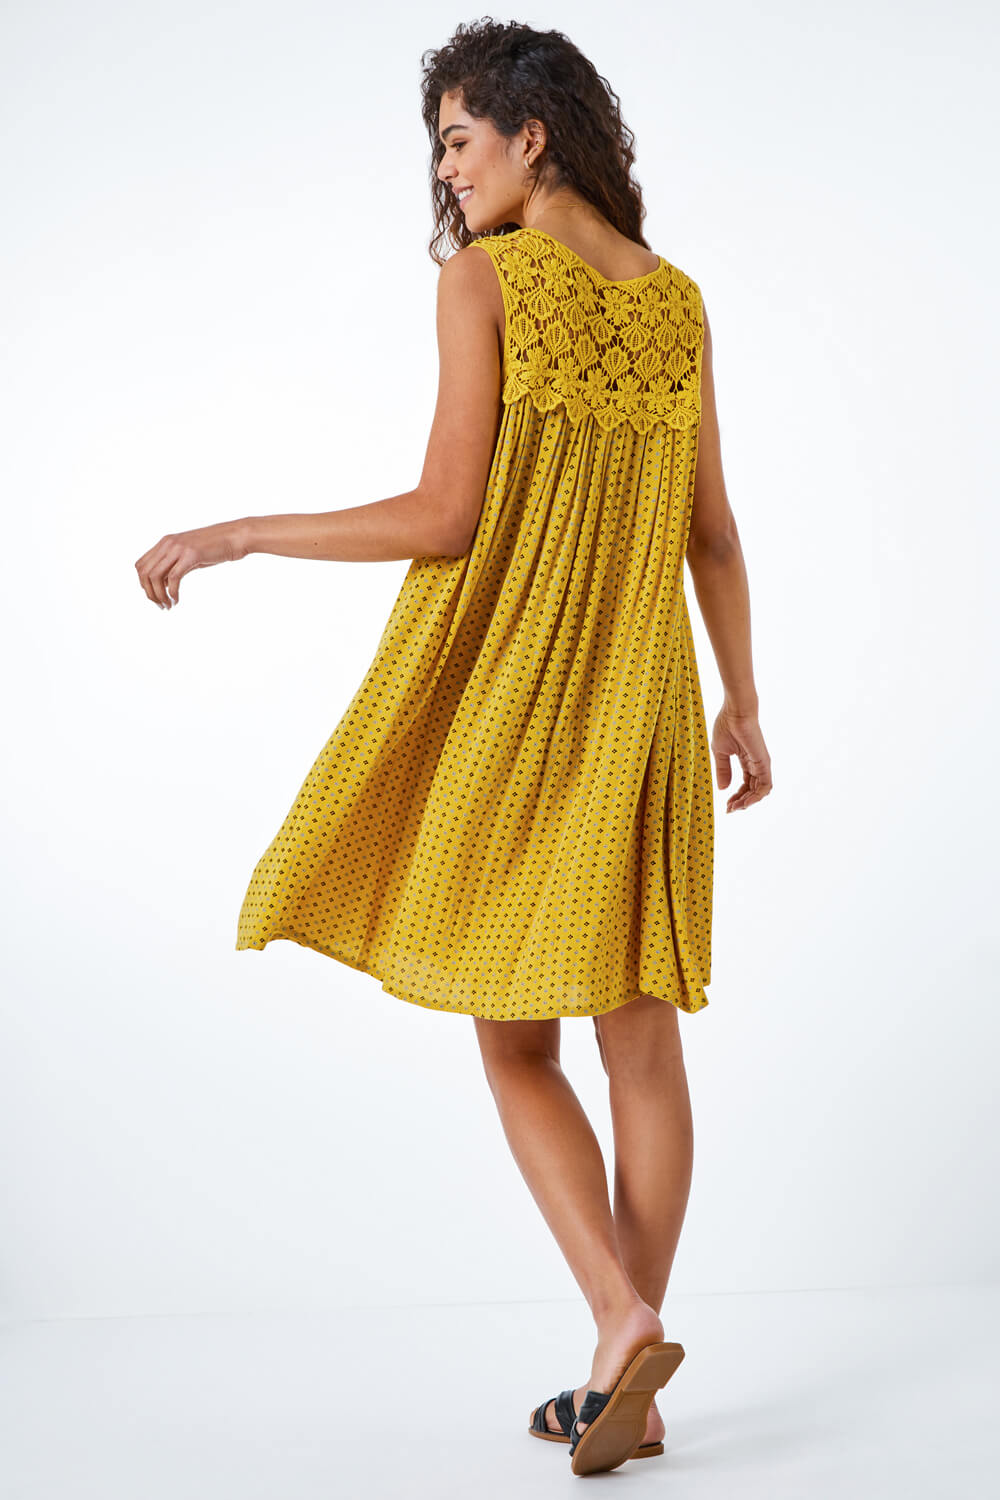 Yellow Ditsy Print Lace Yoke Swing Dress, Image 4 of 5